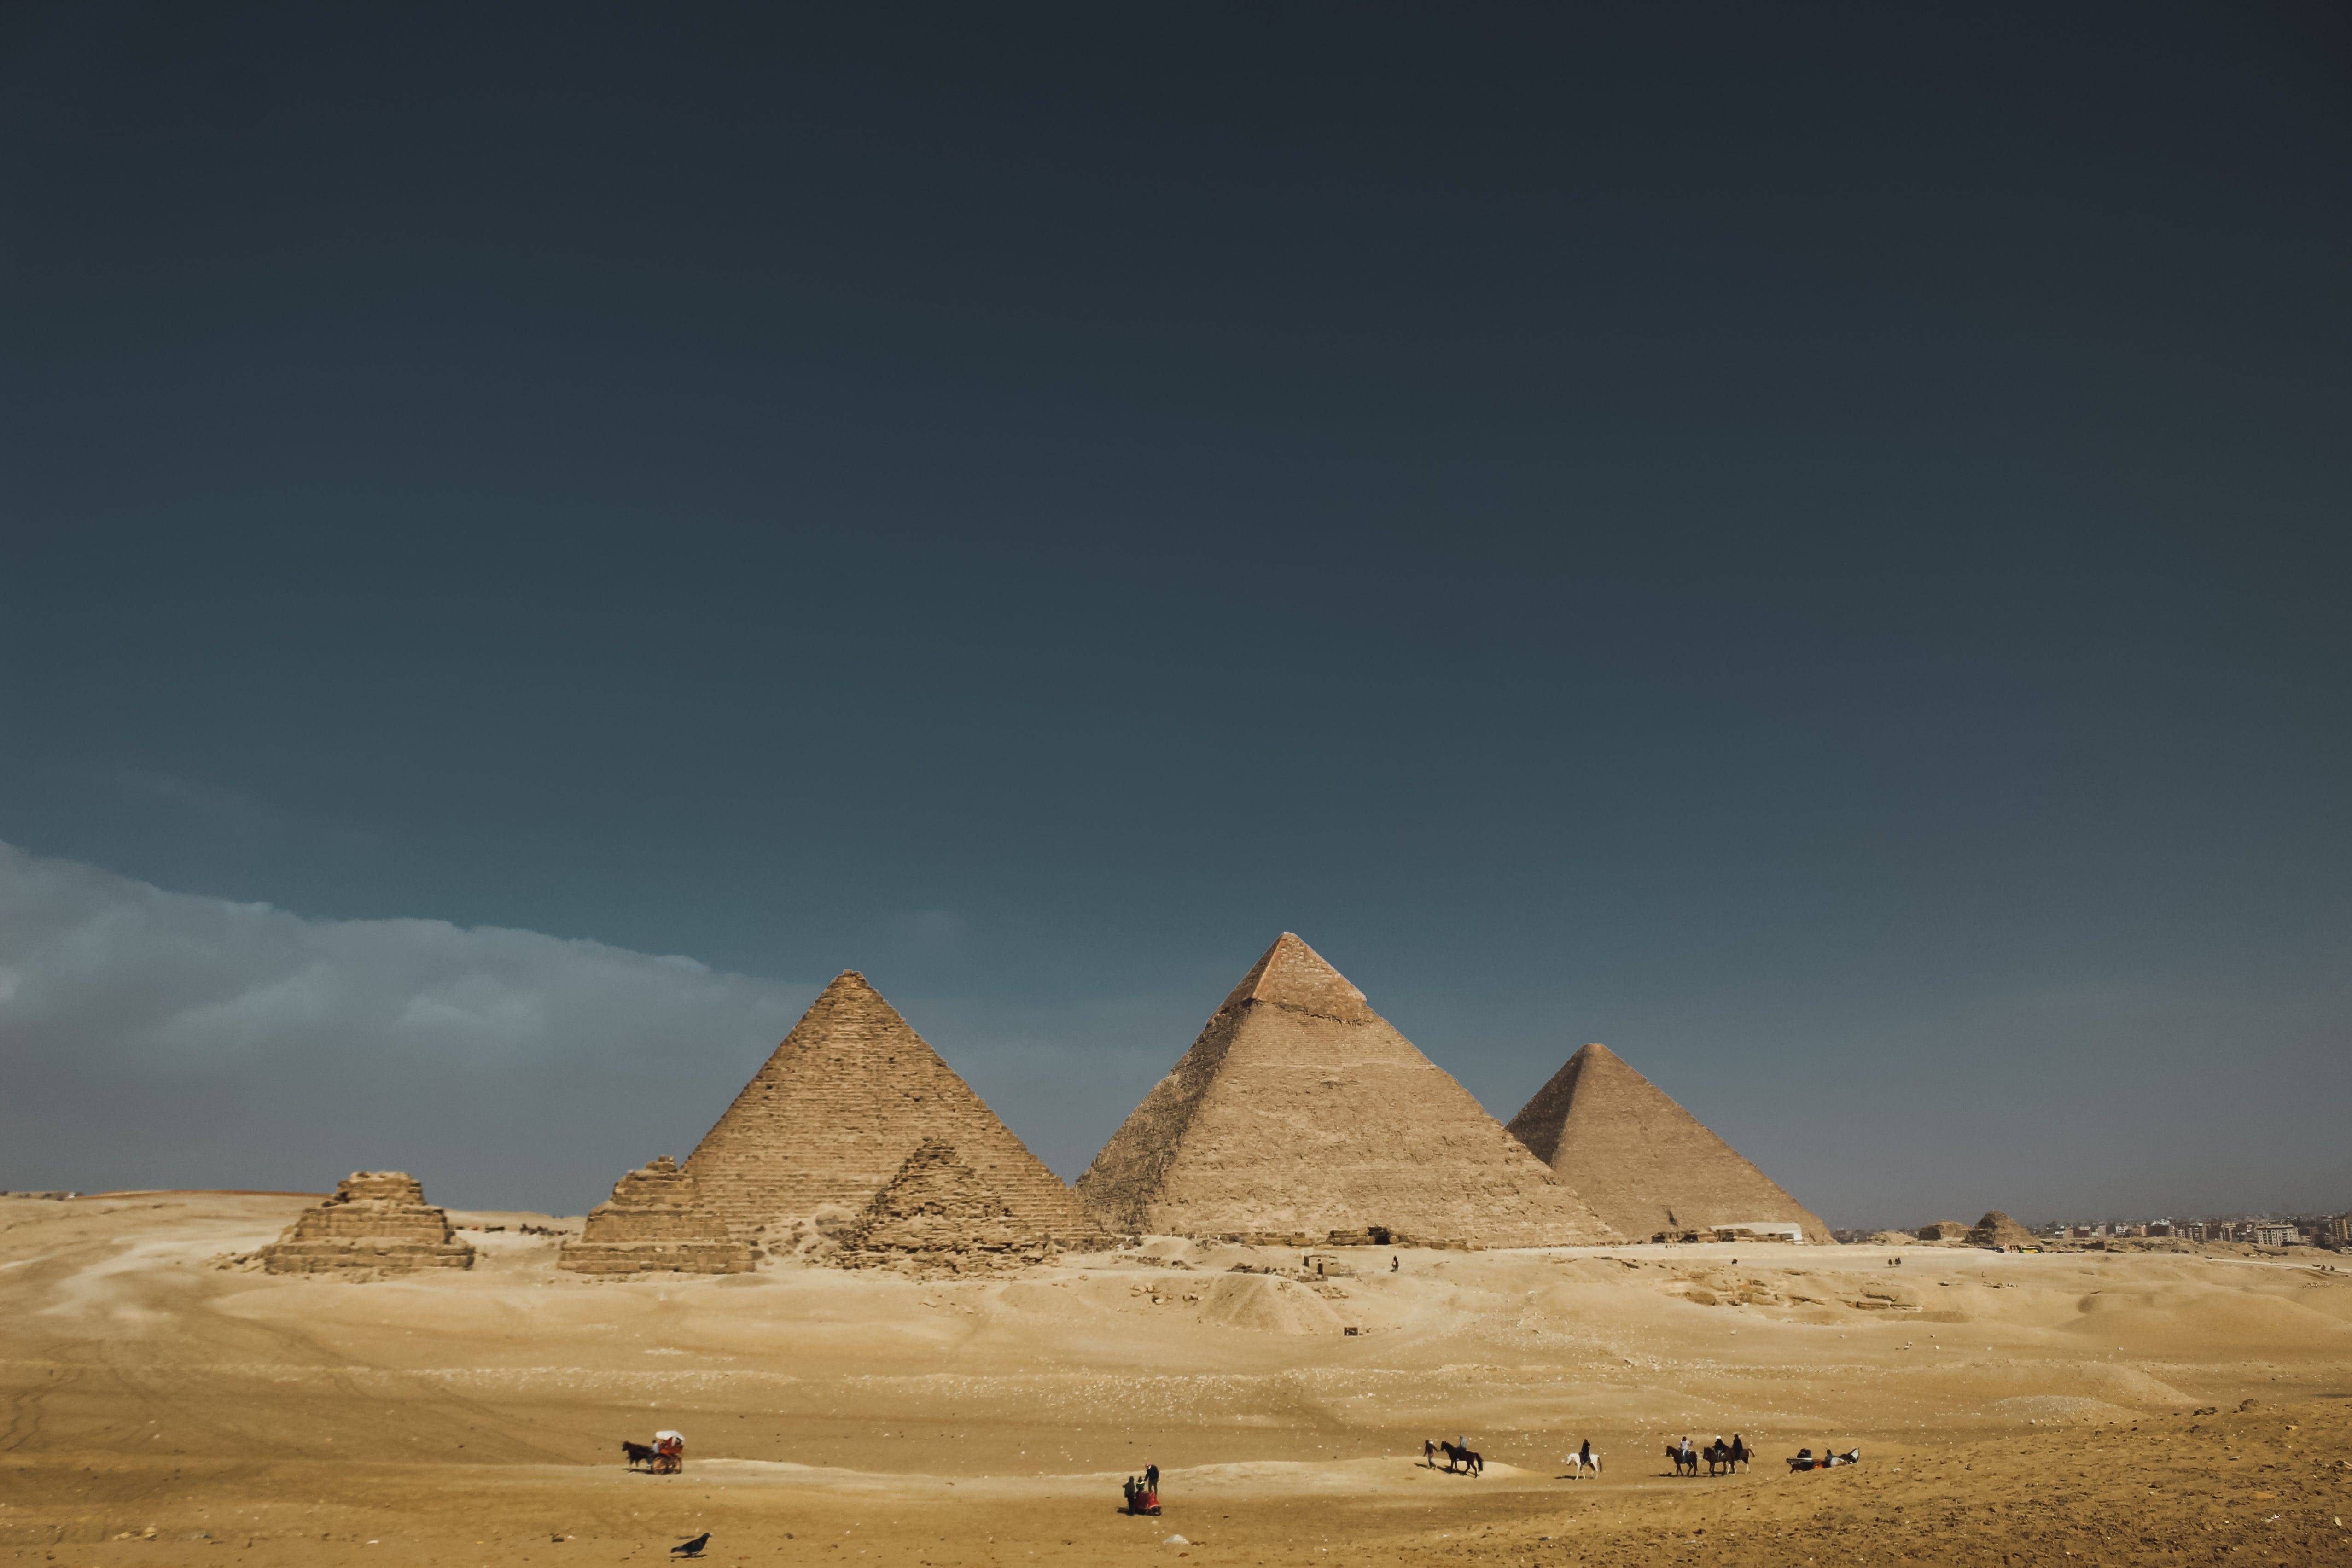 De piramides van Gizeh zijn misschien wel de bekendste Egyptische monumenten